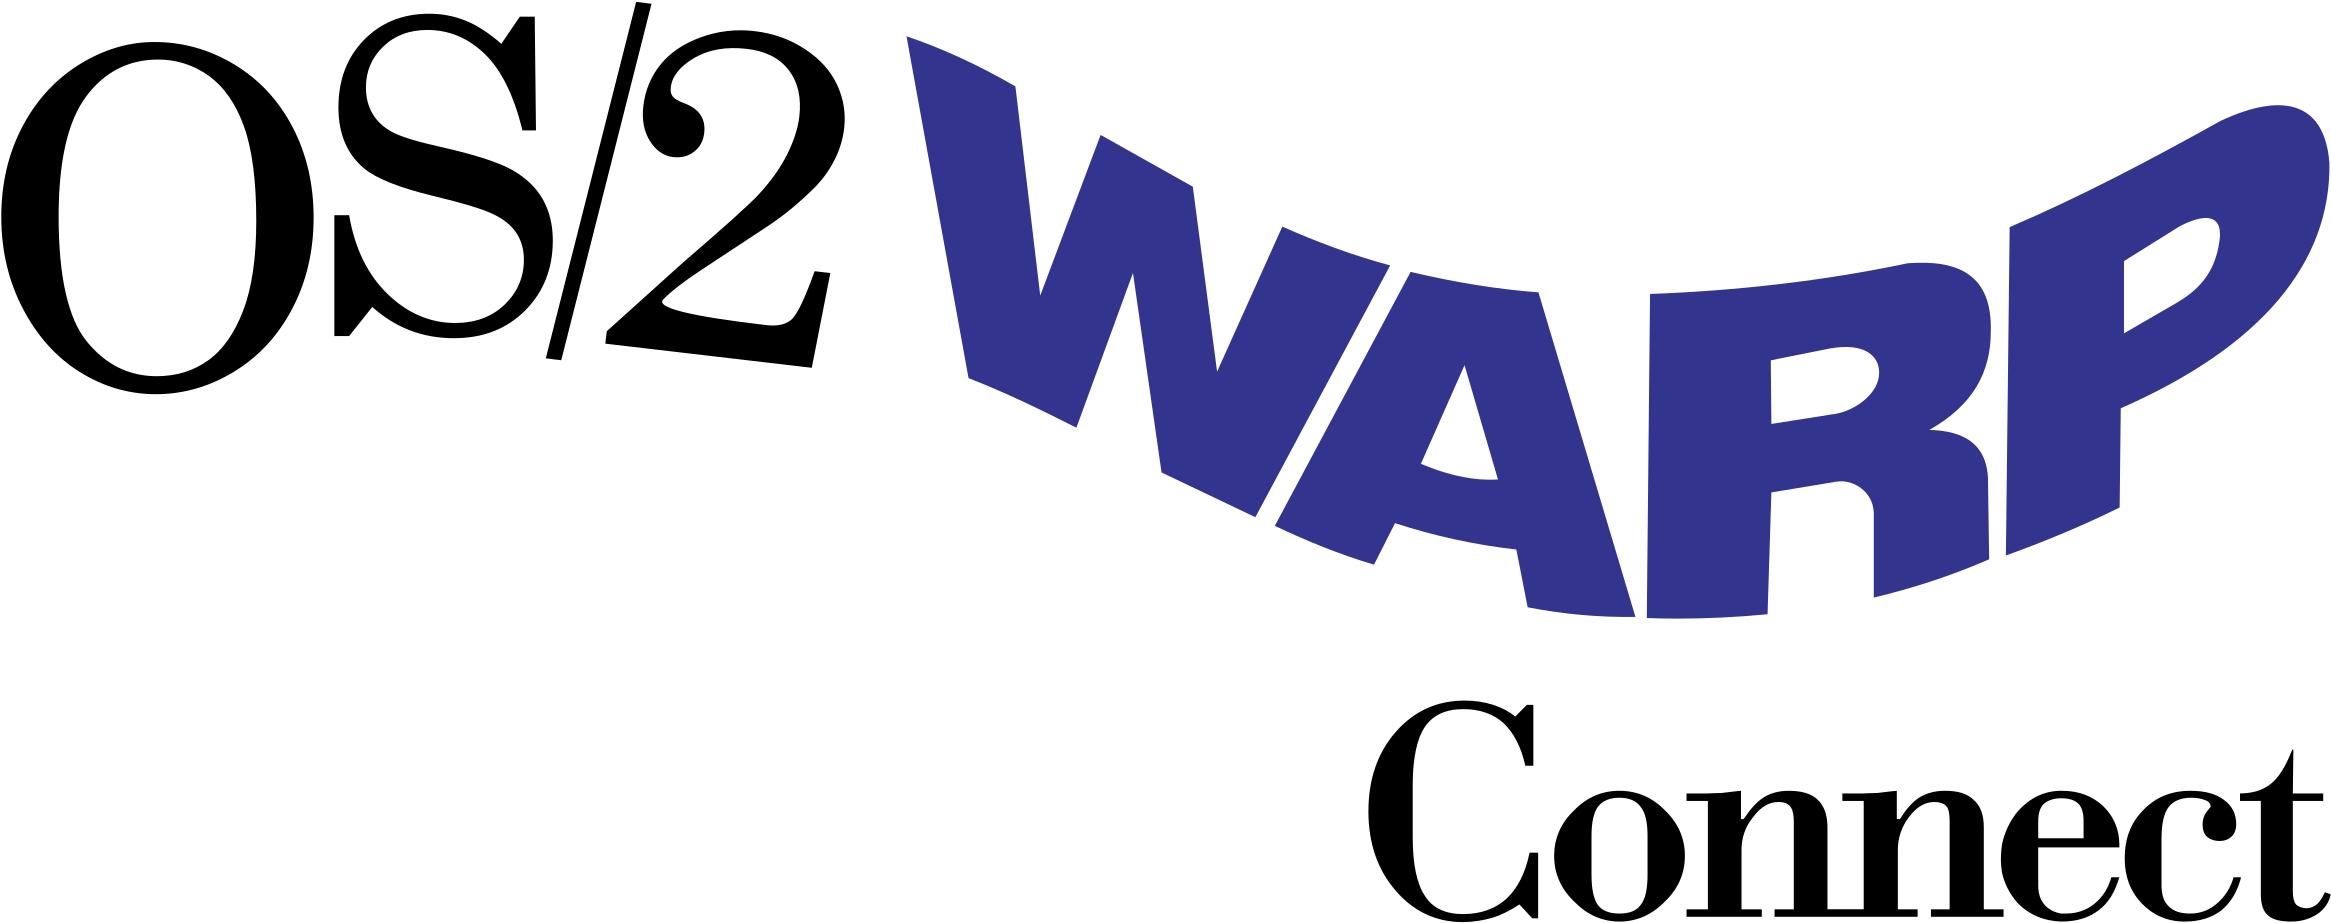 Os 2 Warp Logo Png Transparent - Os 2 Warp Version 4 Box (2400x2400), Png Download